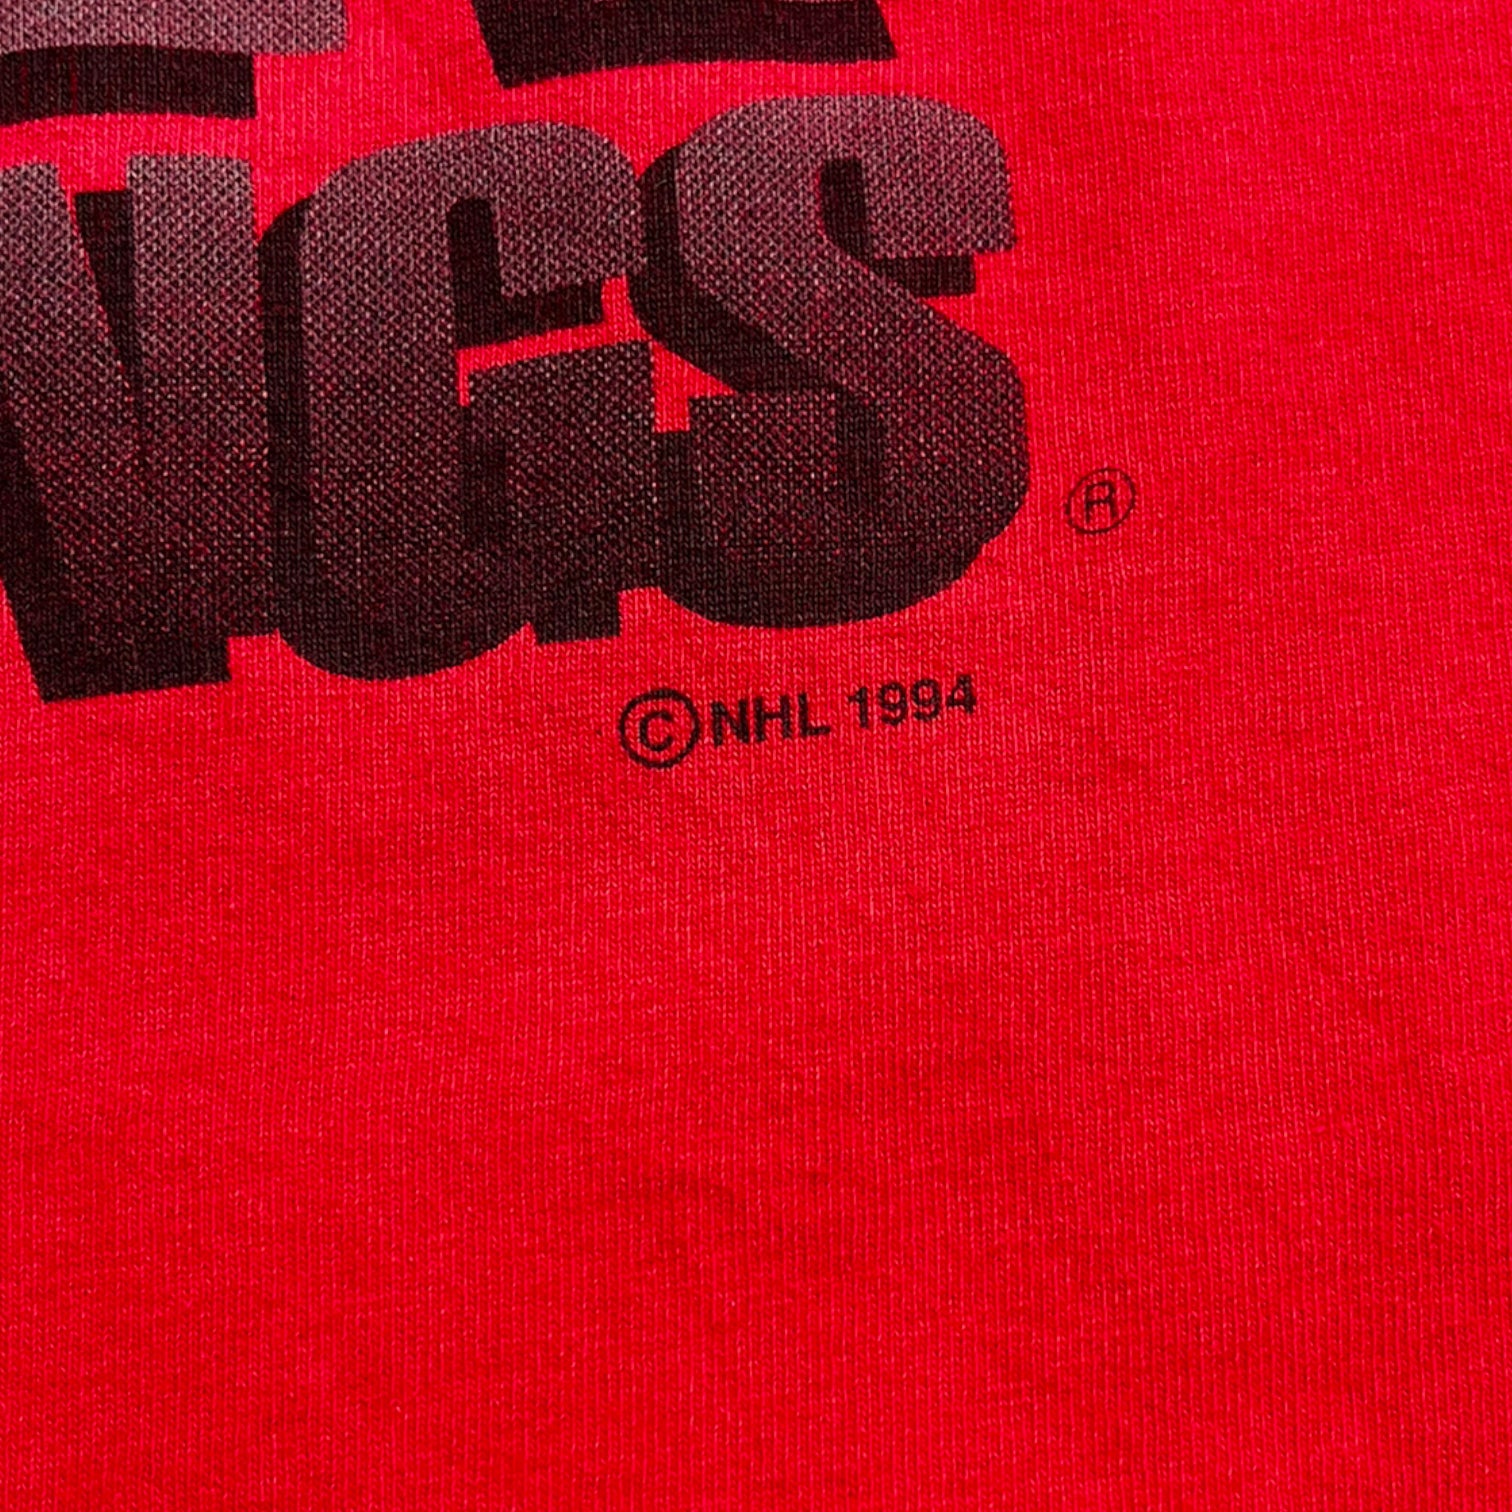 1994 Detroit Red Wings “Detroit’s Team” Tee